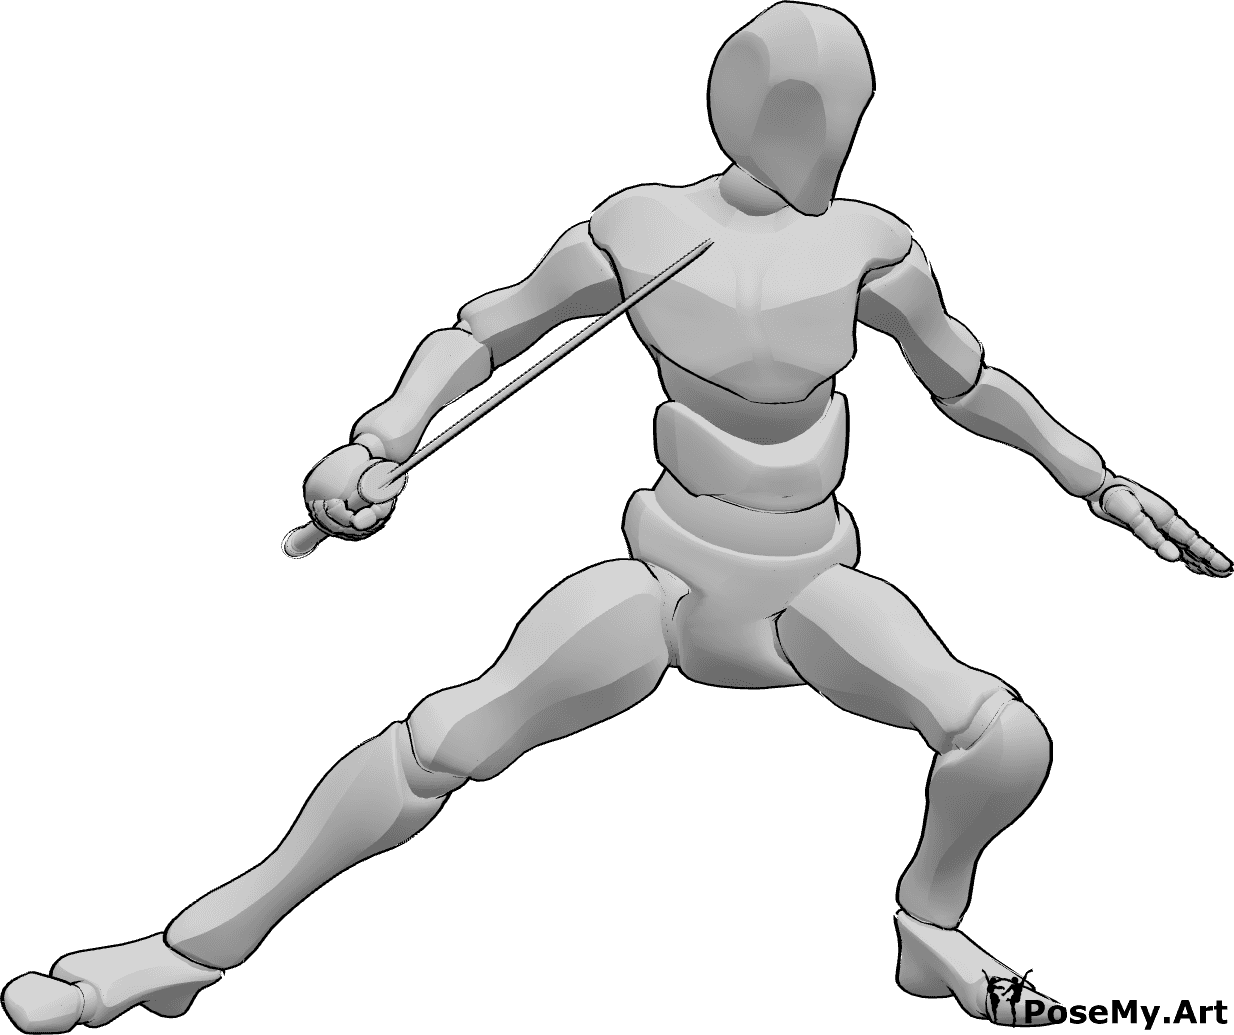 Référence des poses- Pose de la position de combat du Katana - Homme tenant un katana dans sa main droite et prêt à se battre, posture de combat avec katana